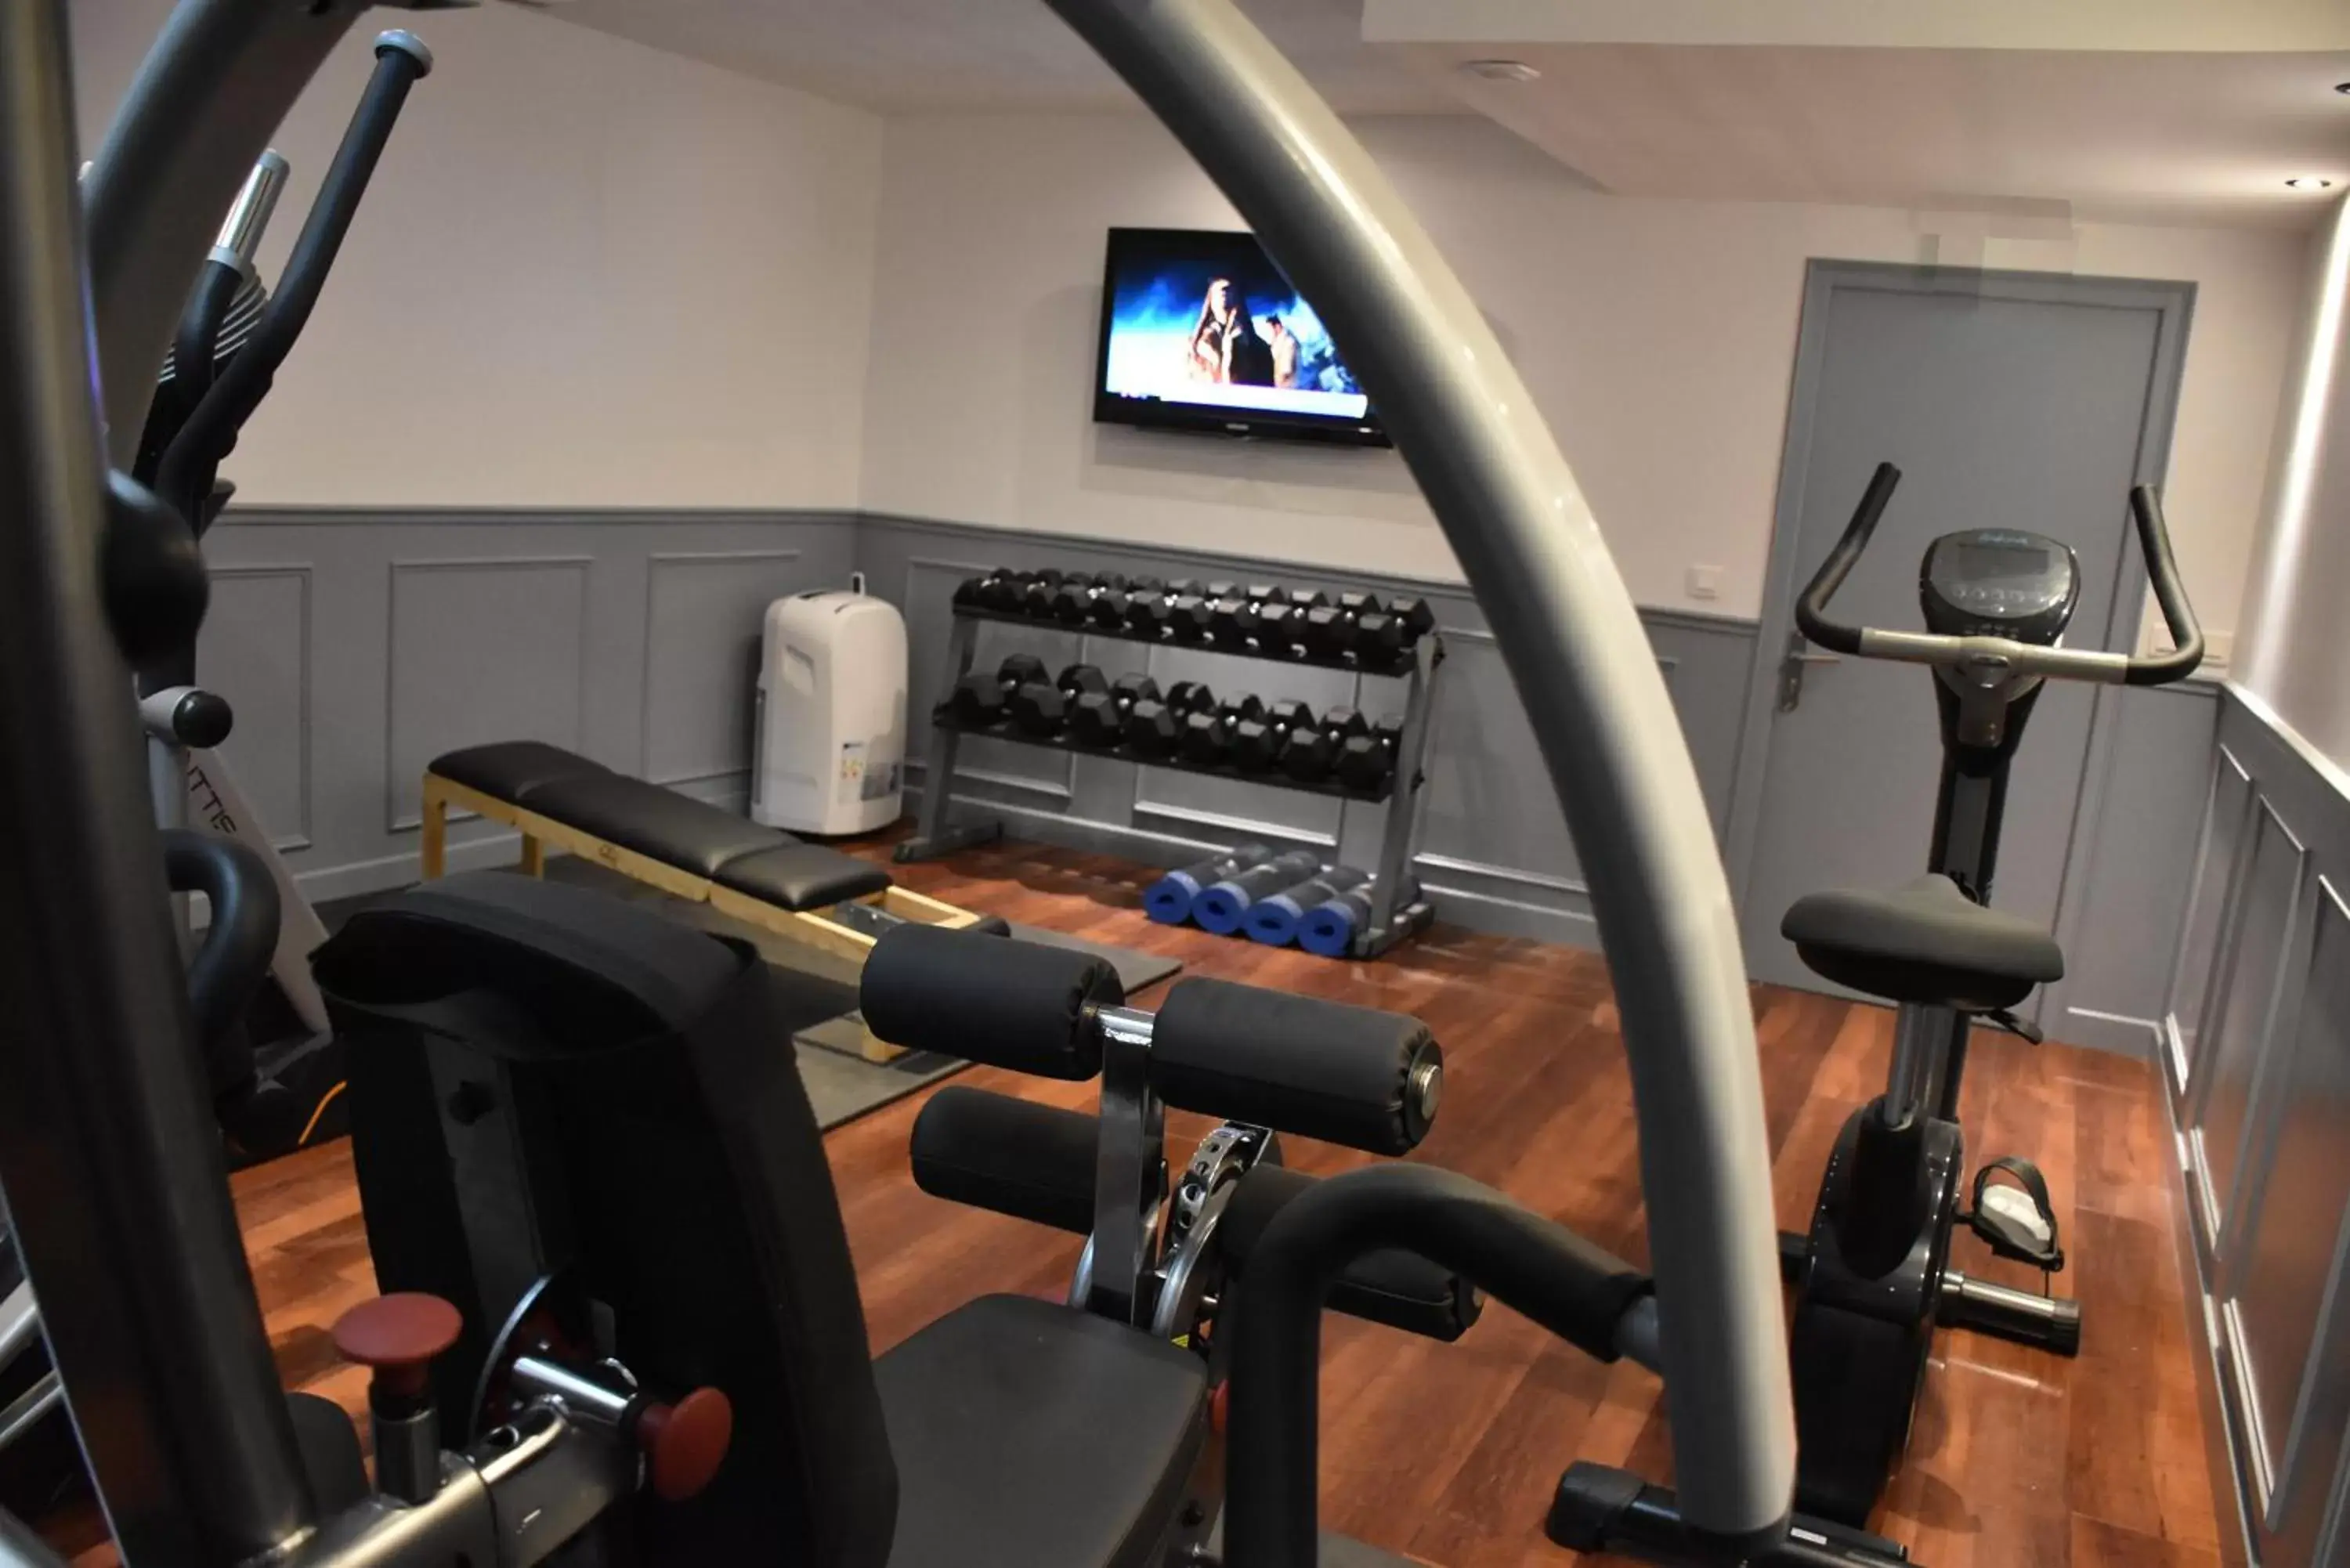 Fitness centre/facilities, Fitness Center/Facilities in Hôtel Tilde